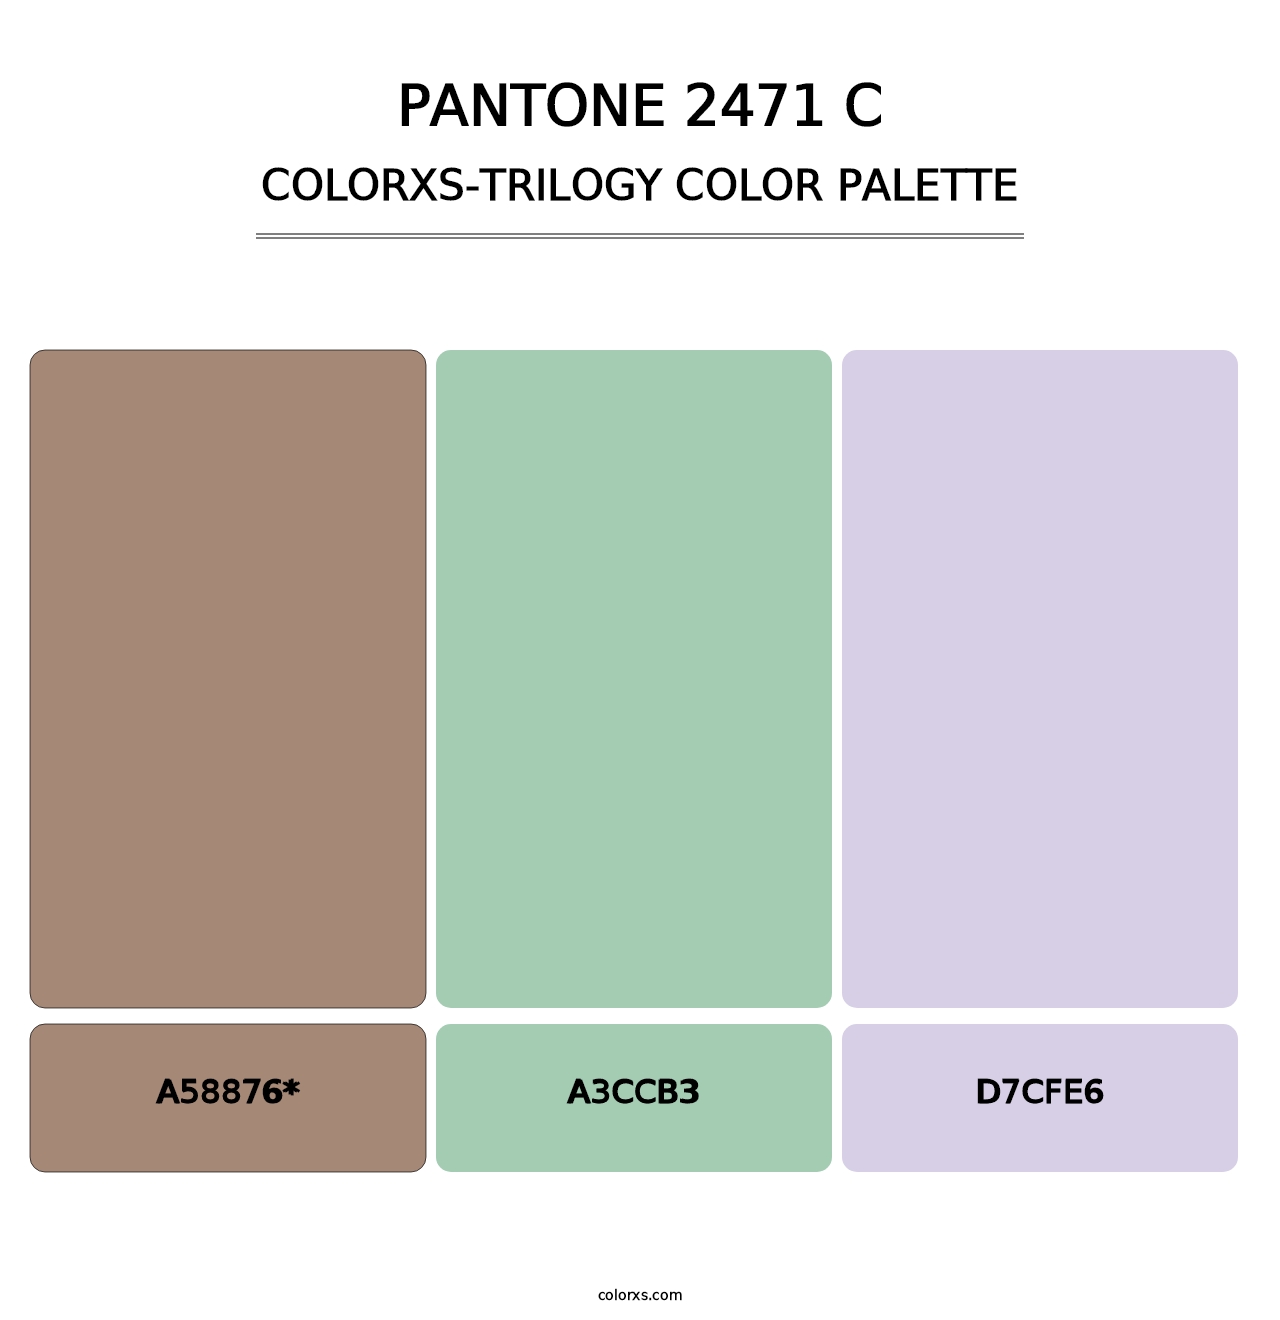 PANTONE 2471 C - Colorxs Trilogy Palette